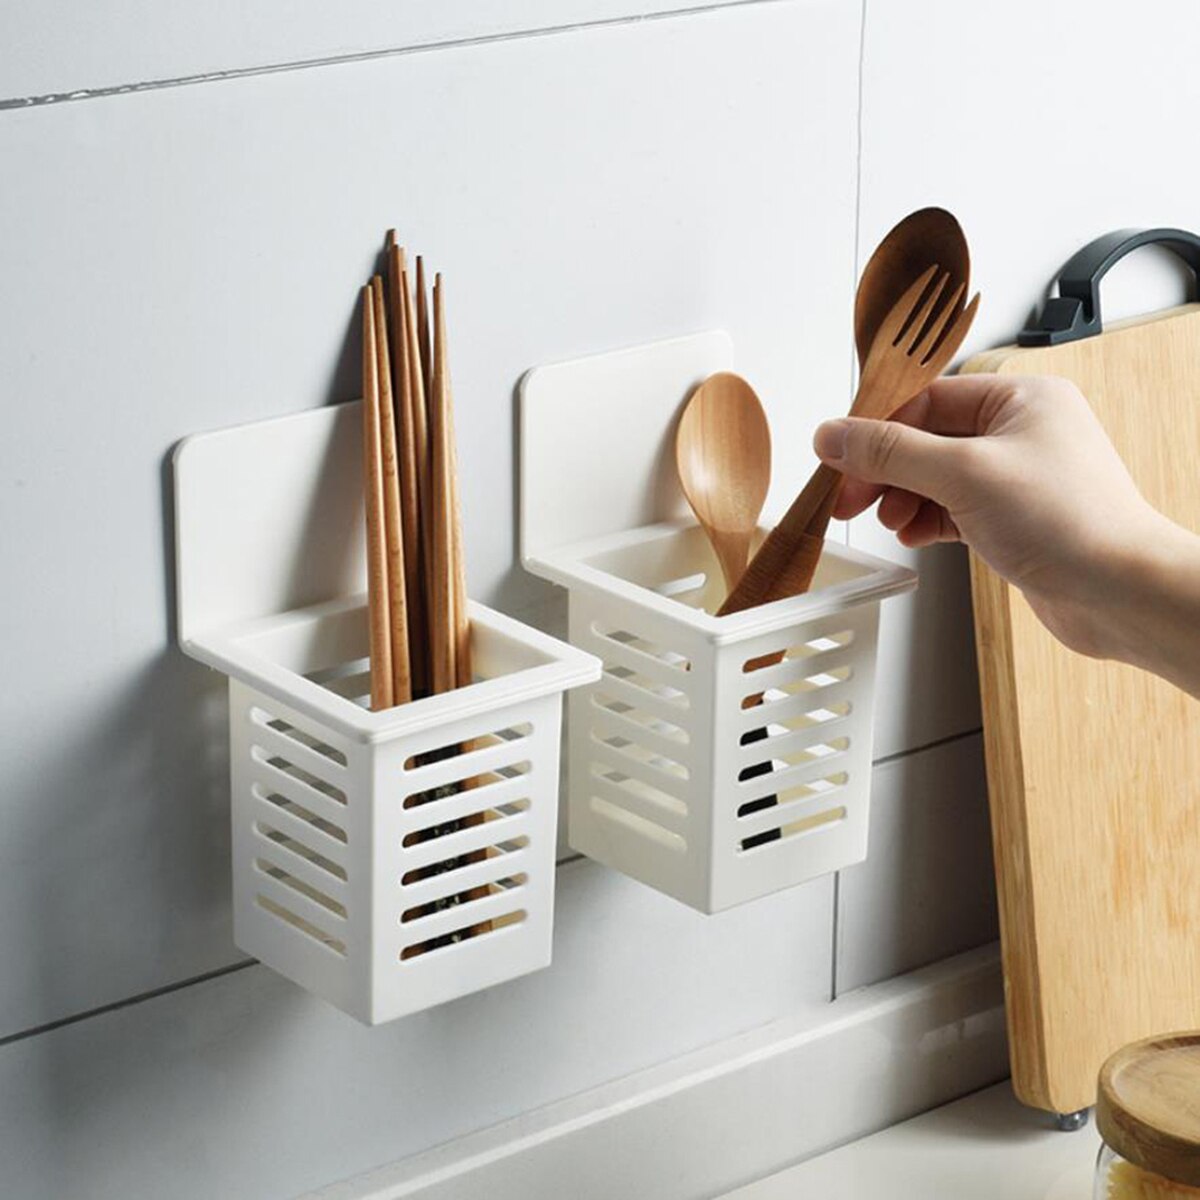 Spisepinde holder opbevaringsstativ vægmonterede spisepinde kurv gaffel opbevaring køkken husholdningsafløbshylde Grandado